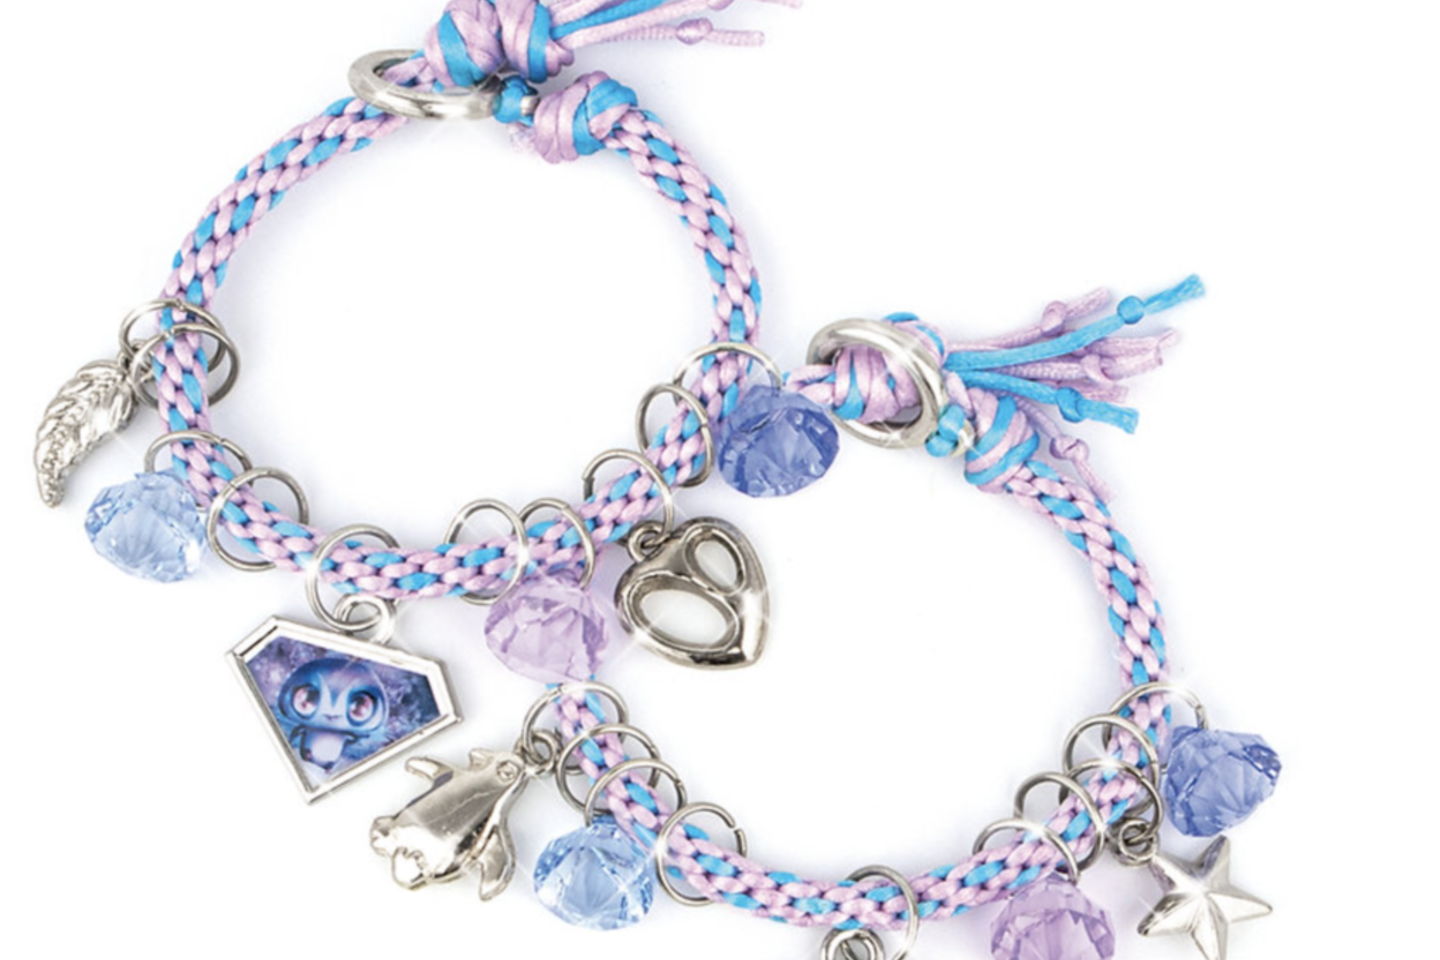  „Nebulous Stars Best Friend Bracelets“ rinkinys padės sukurti gražiausias draugystės apyrankes.<br> Gamintojo nuotr.